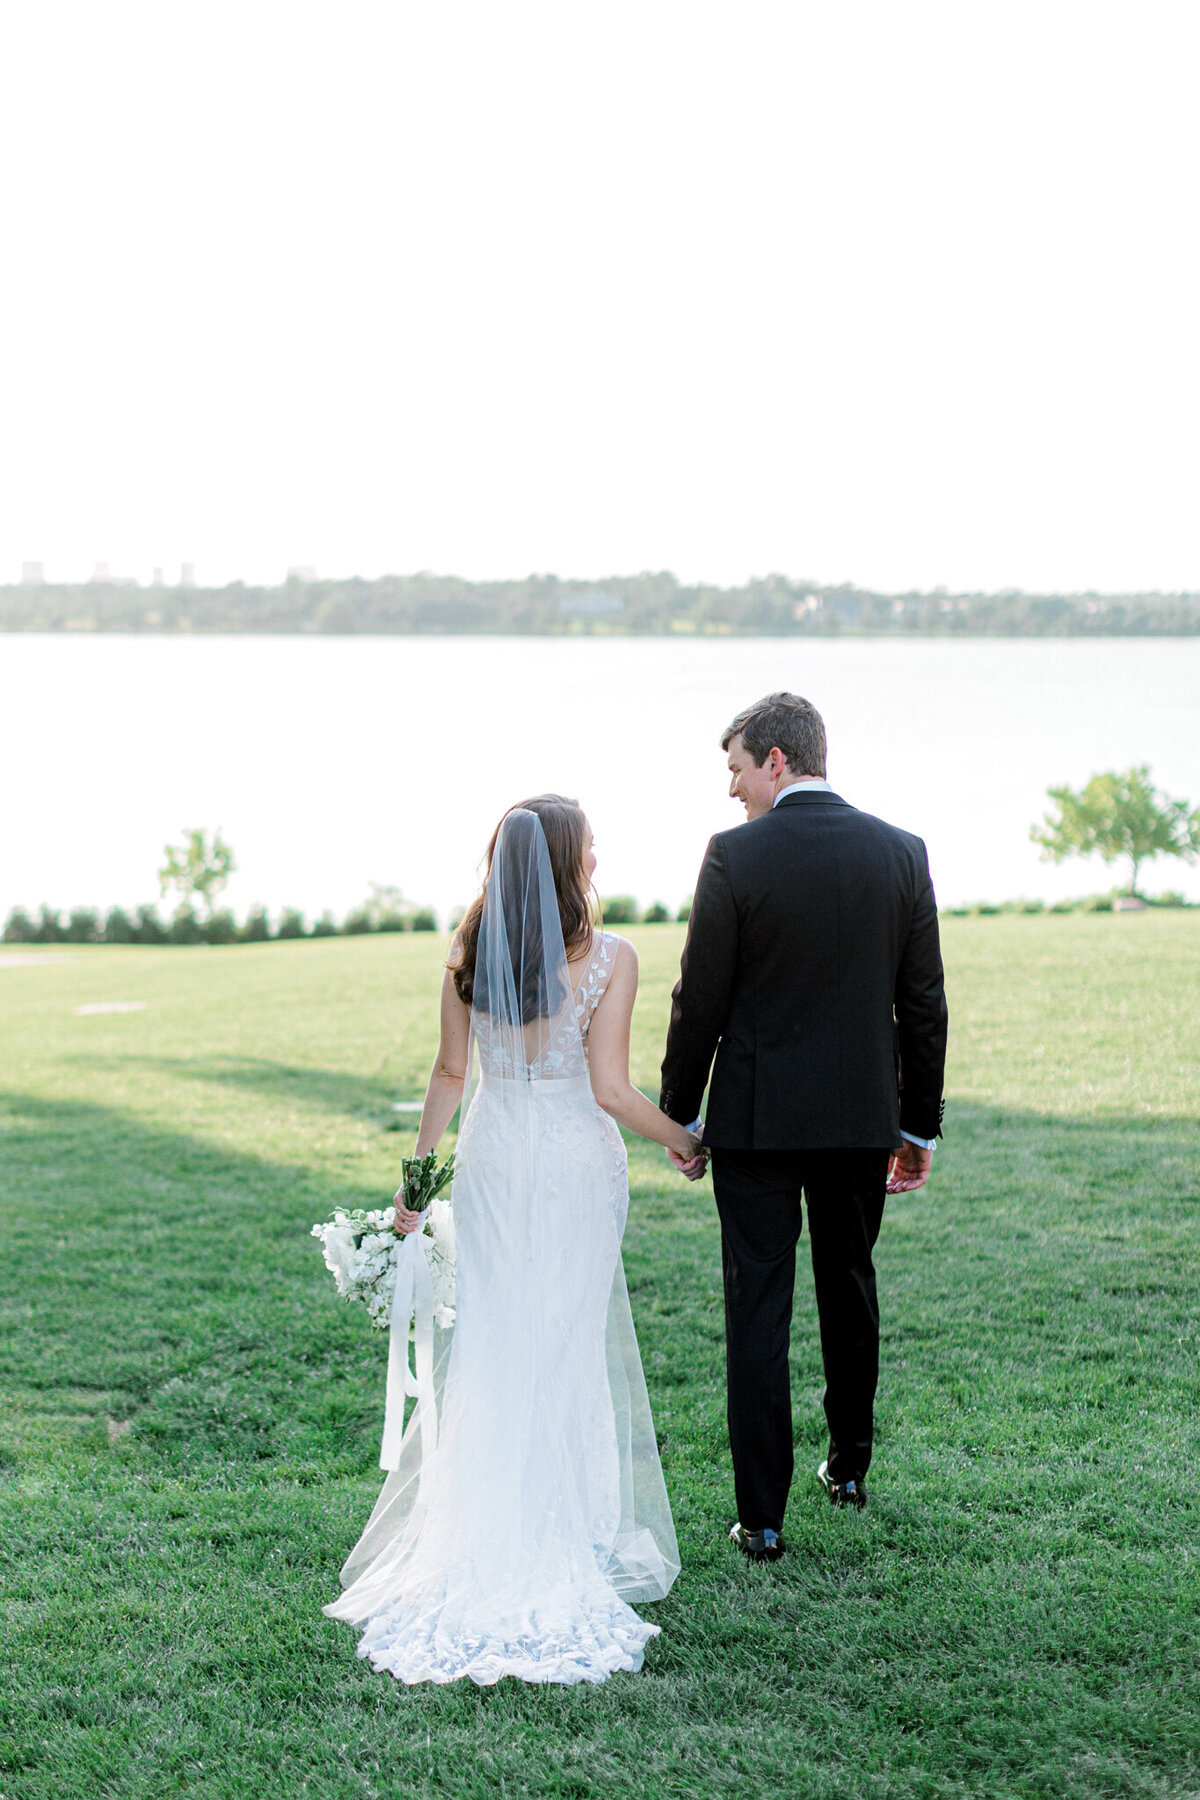 Gena & Matt's Wedding at the Dallas Arboretum | Dallas Wedding Photographer | Sami Kathryn Photography-171